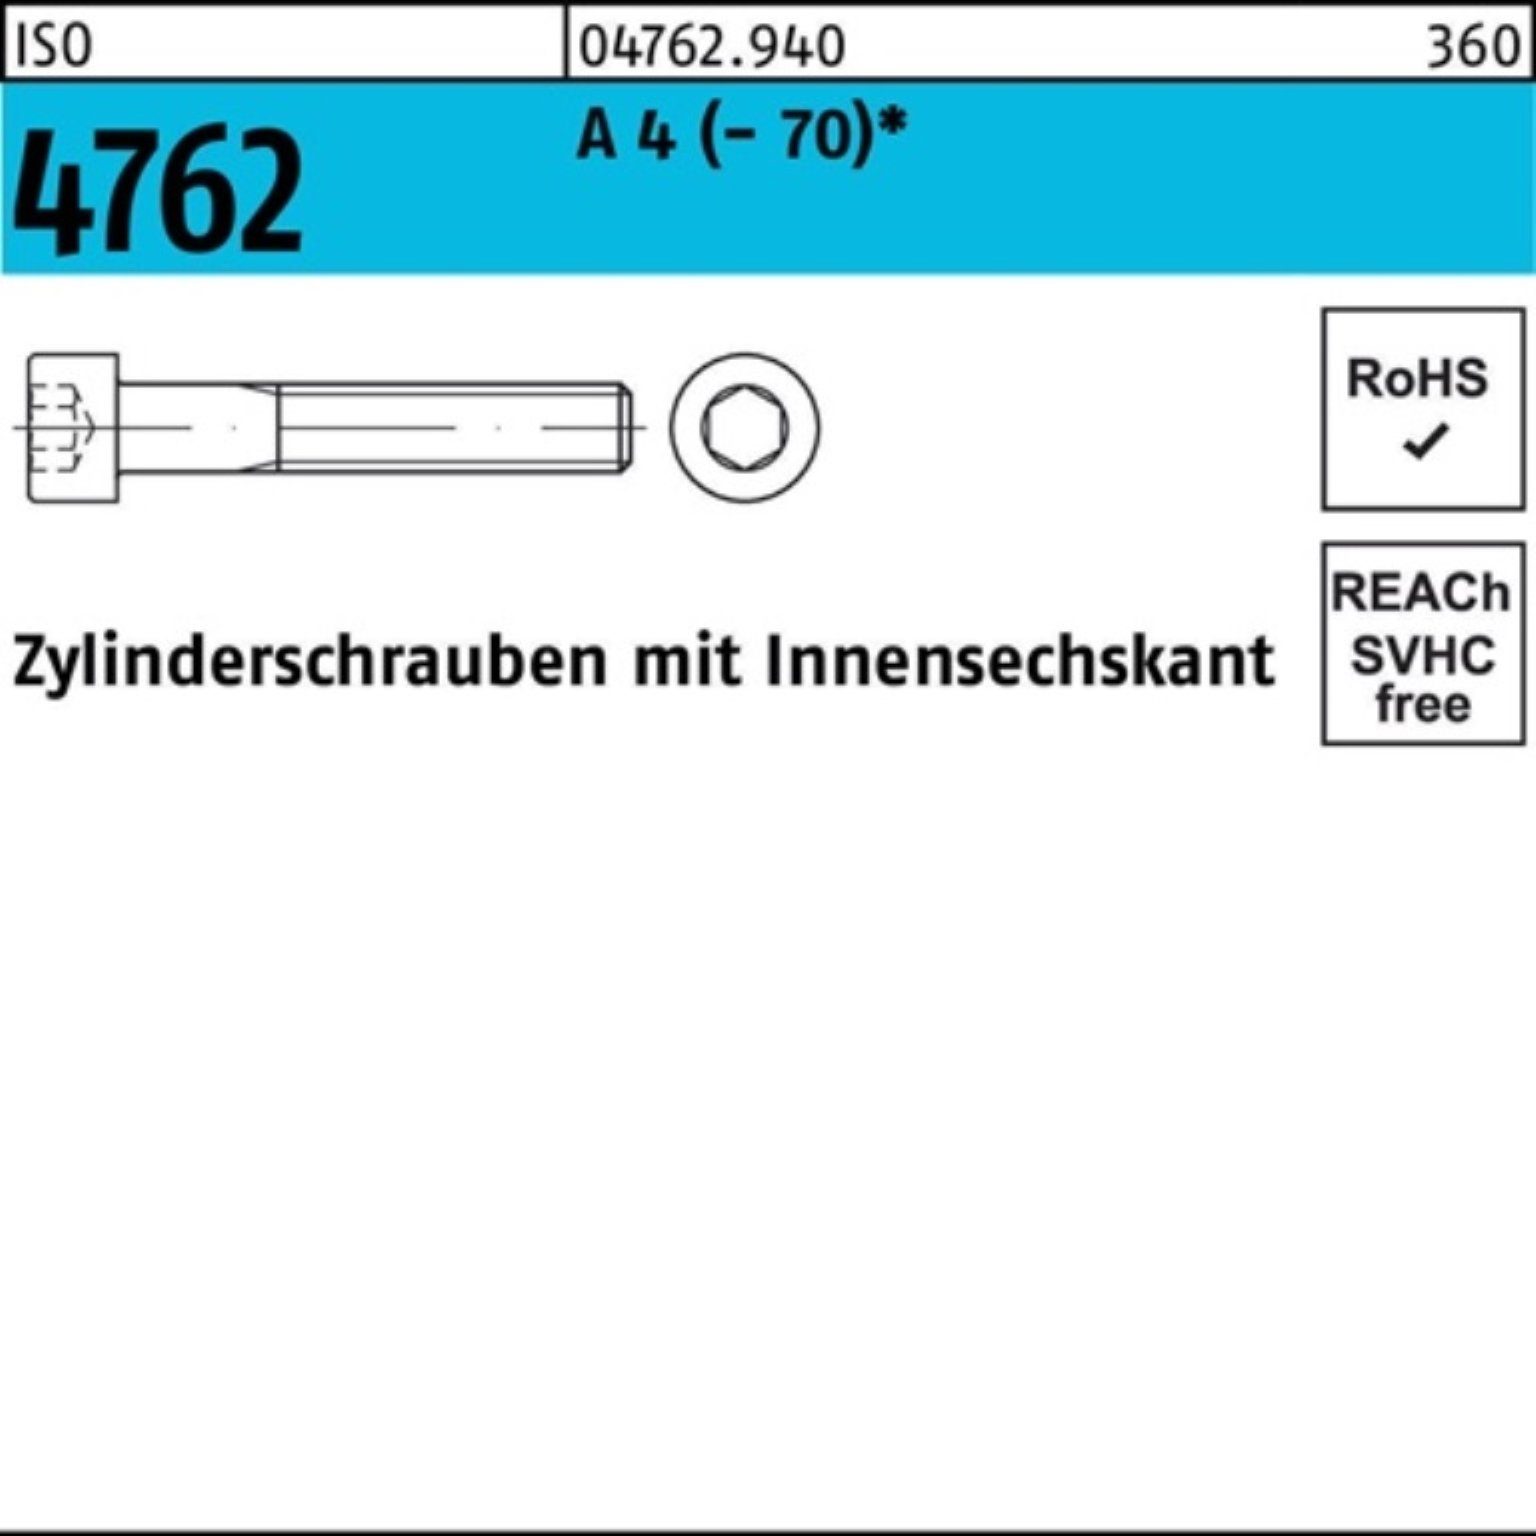 50 Zylinderschraube M14x 4 A Reyher ISO Zylinderschraube S Innen-6kt 4762 100er Pack (70) 20